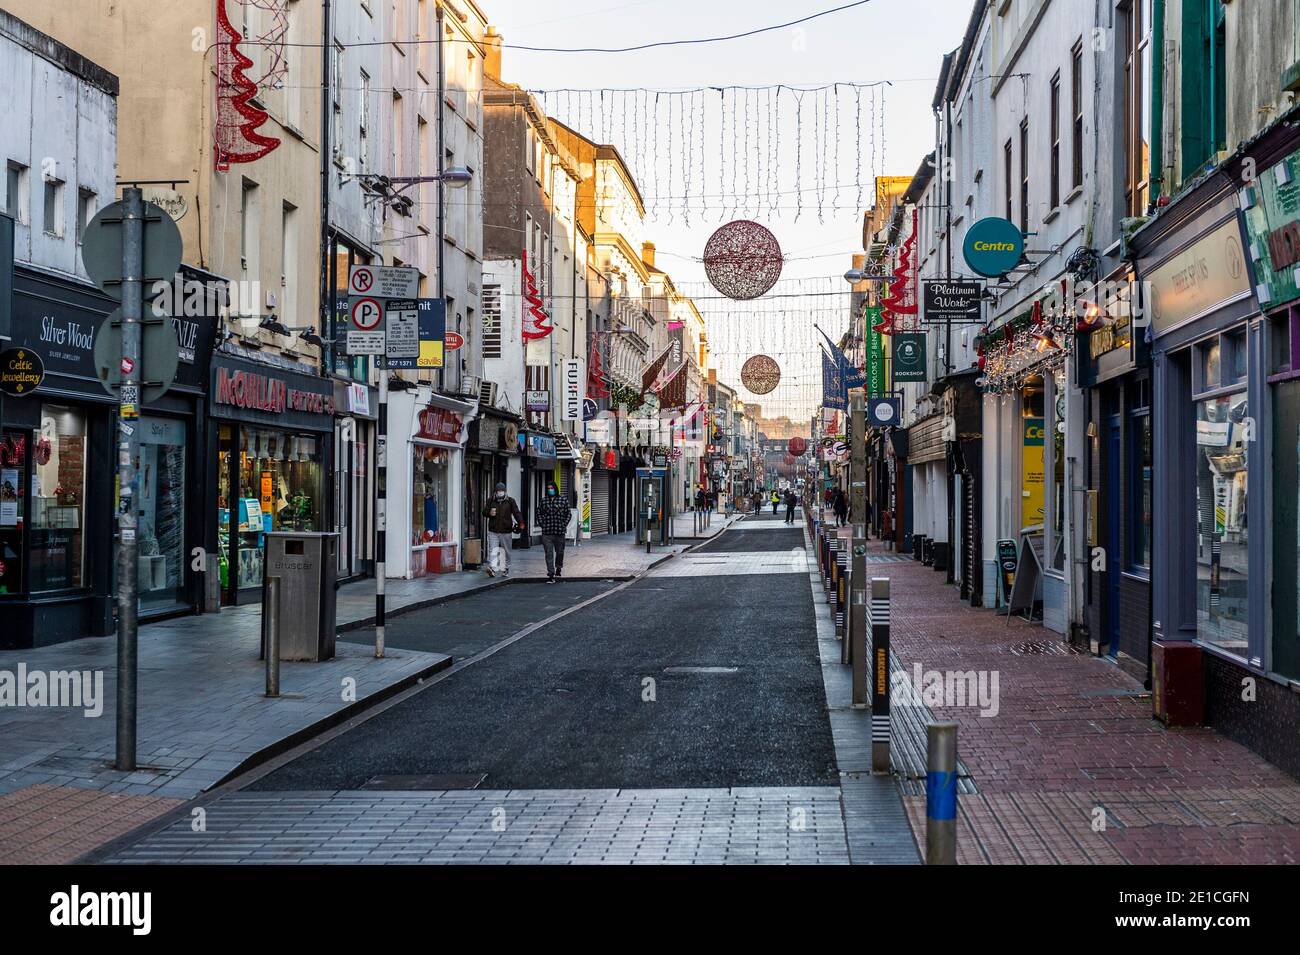 Cork, Irlande. 6 janvier 2021. Le centre-ville de Cork était calme cet après-midi, en raison des restrictions de niveau 5 de confinement du coronavirus. Crédit : AG News/Alay Live News Banque D'Images